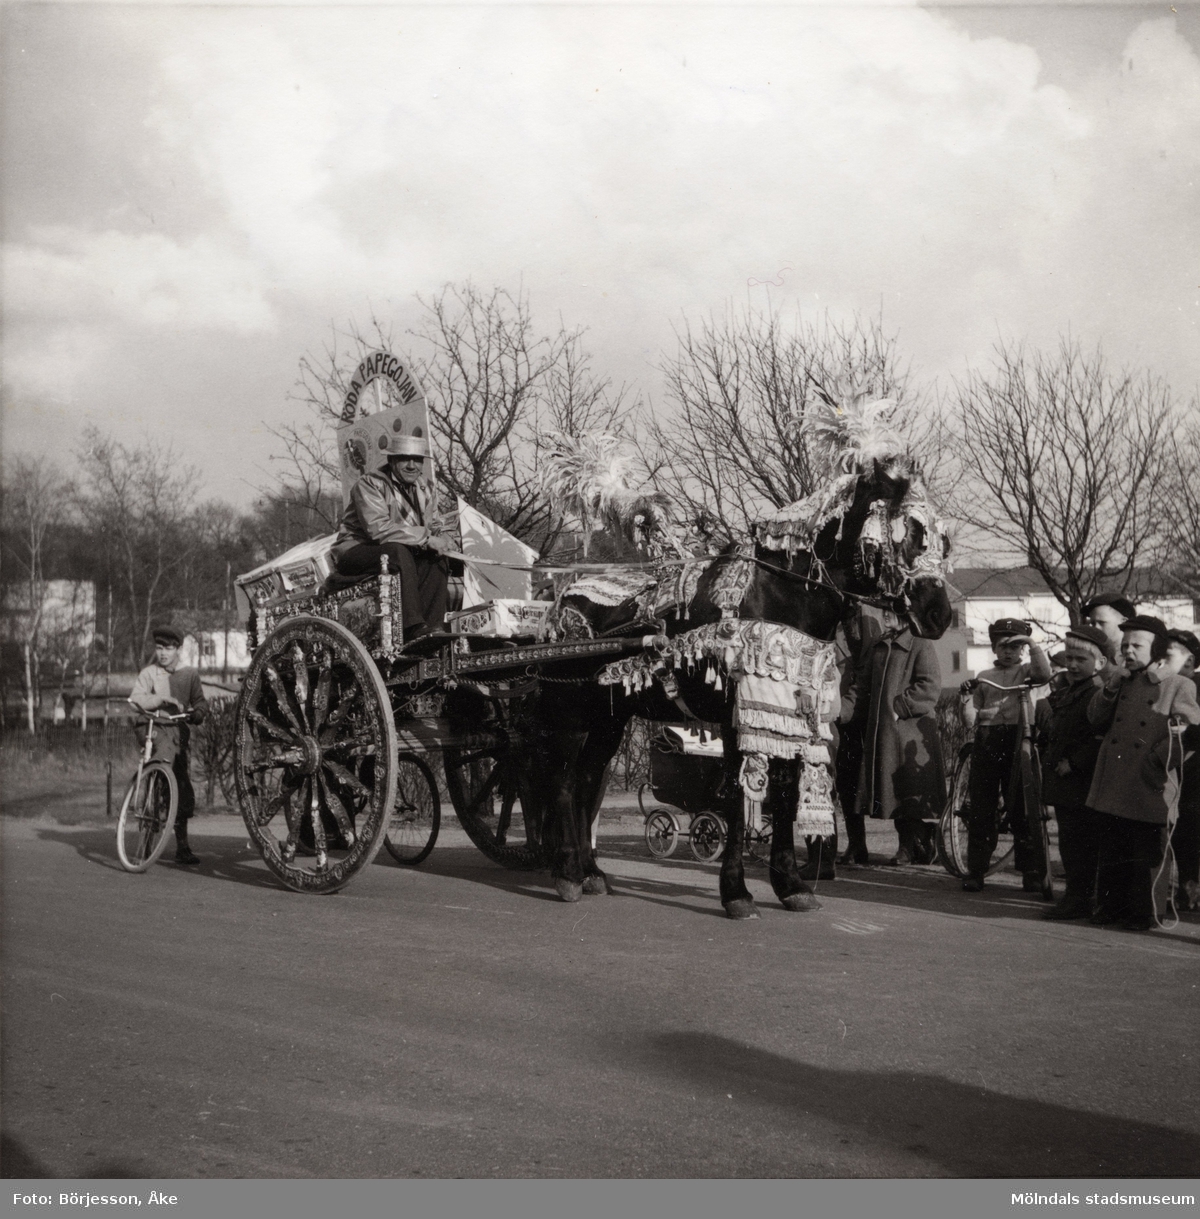 Motiv från Solängen. Häst med vagn och kusk bär dekorationer. Möjligtvis reklam av något slag? Skylt med texten "Röda papegojan" på vagnen. Barn på cyklar står runt omkring och tittar på.
Möjligen Frölundagatan på 1950-60-talet.